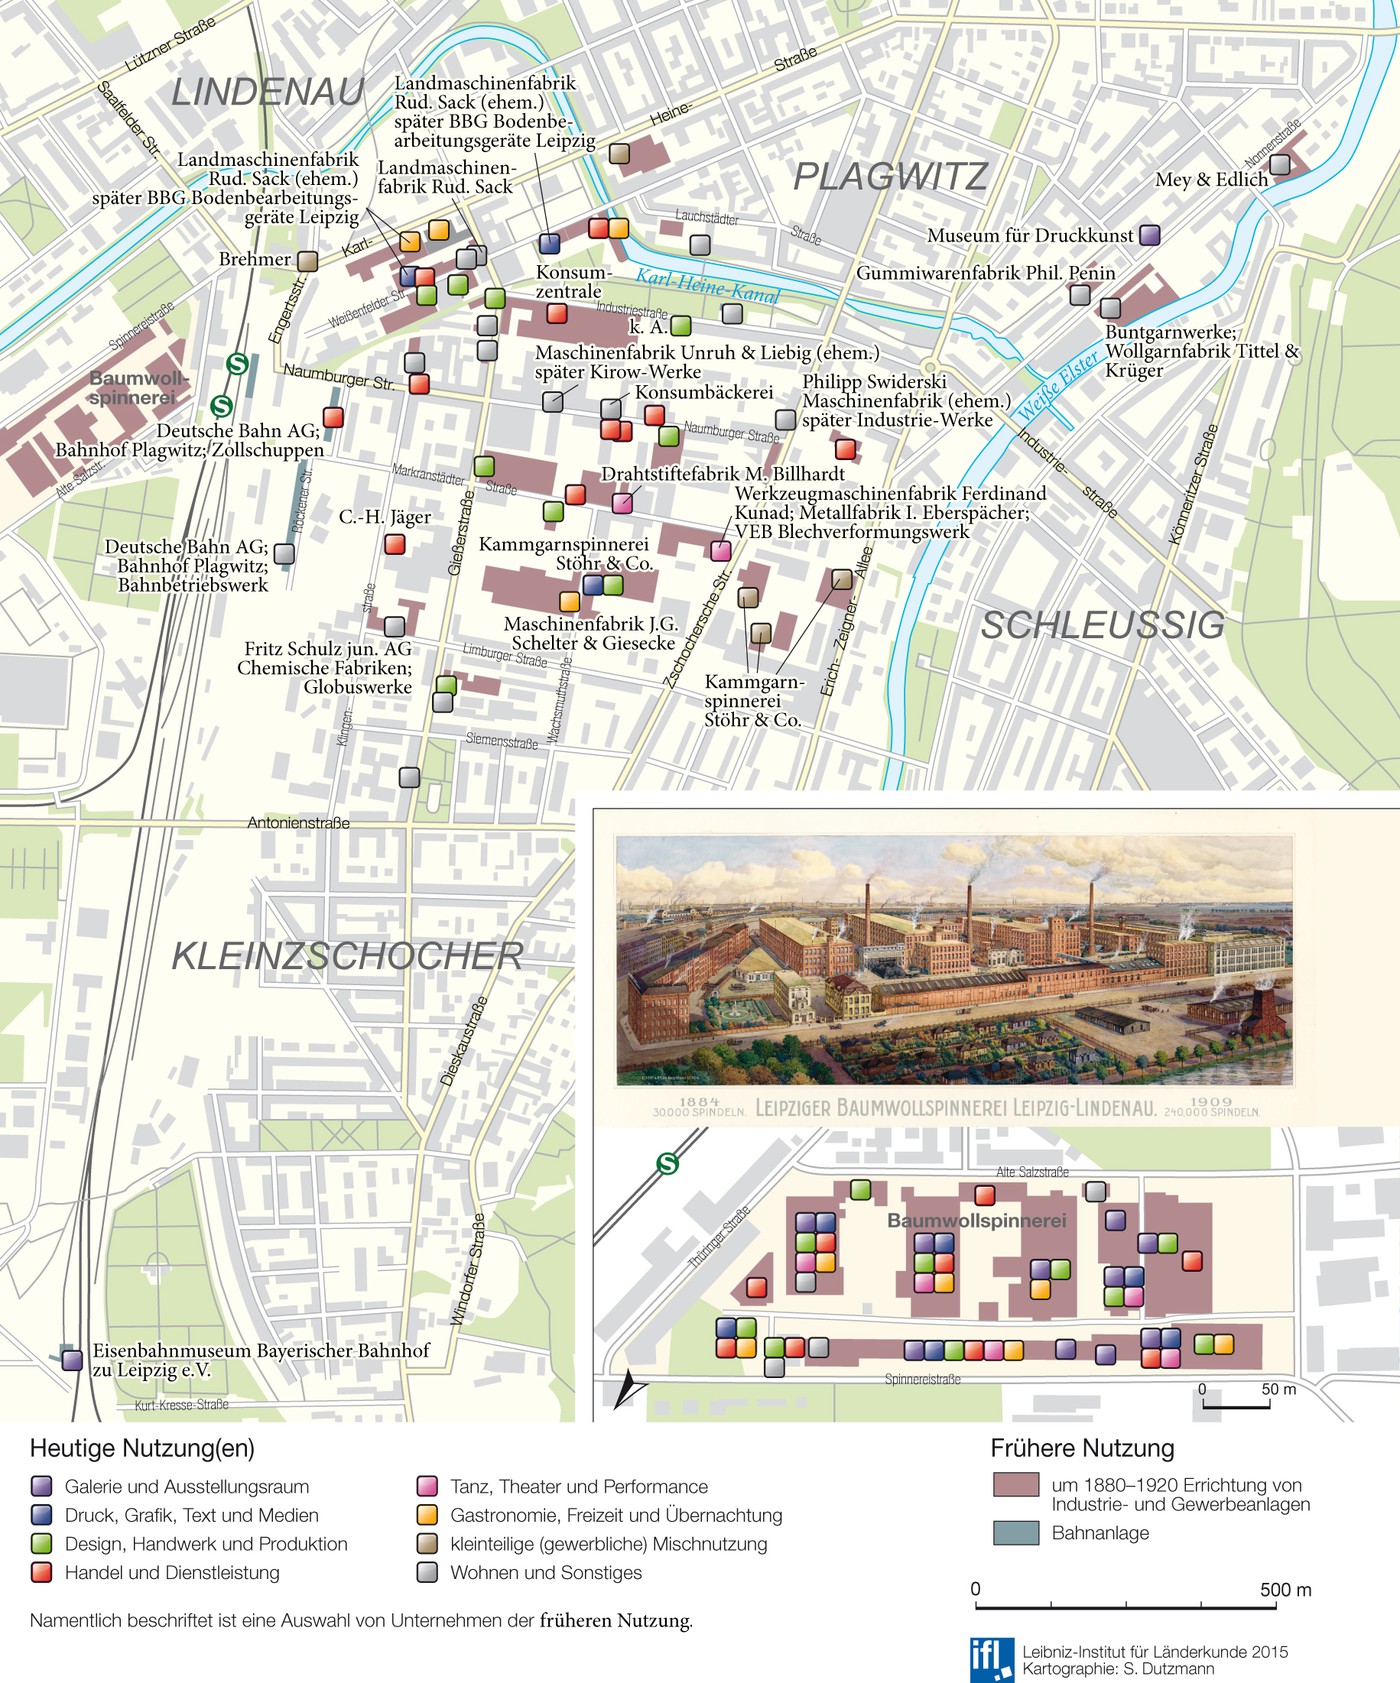 Karte ausgewählter denkmalgeschützte Gewerbe- und Fabrikgebäude in ihrer heutigen Nutzung in Plagwitz-Lindenau